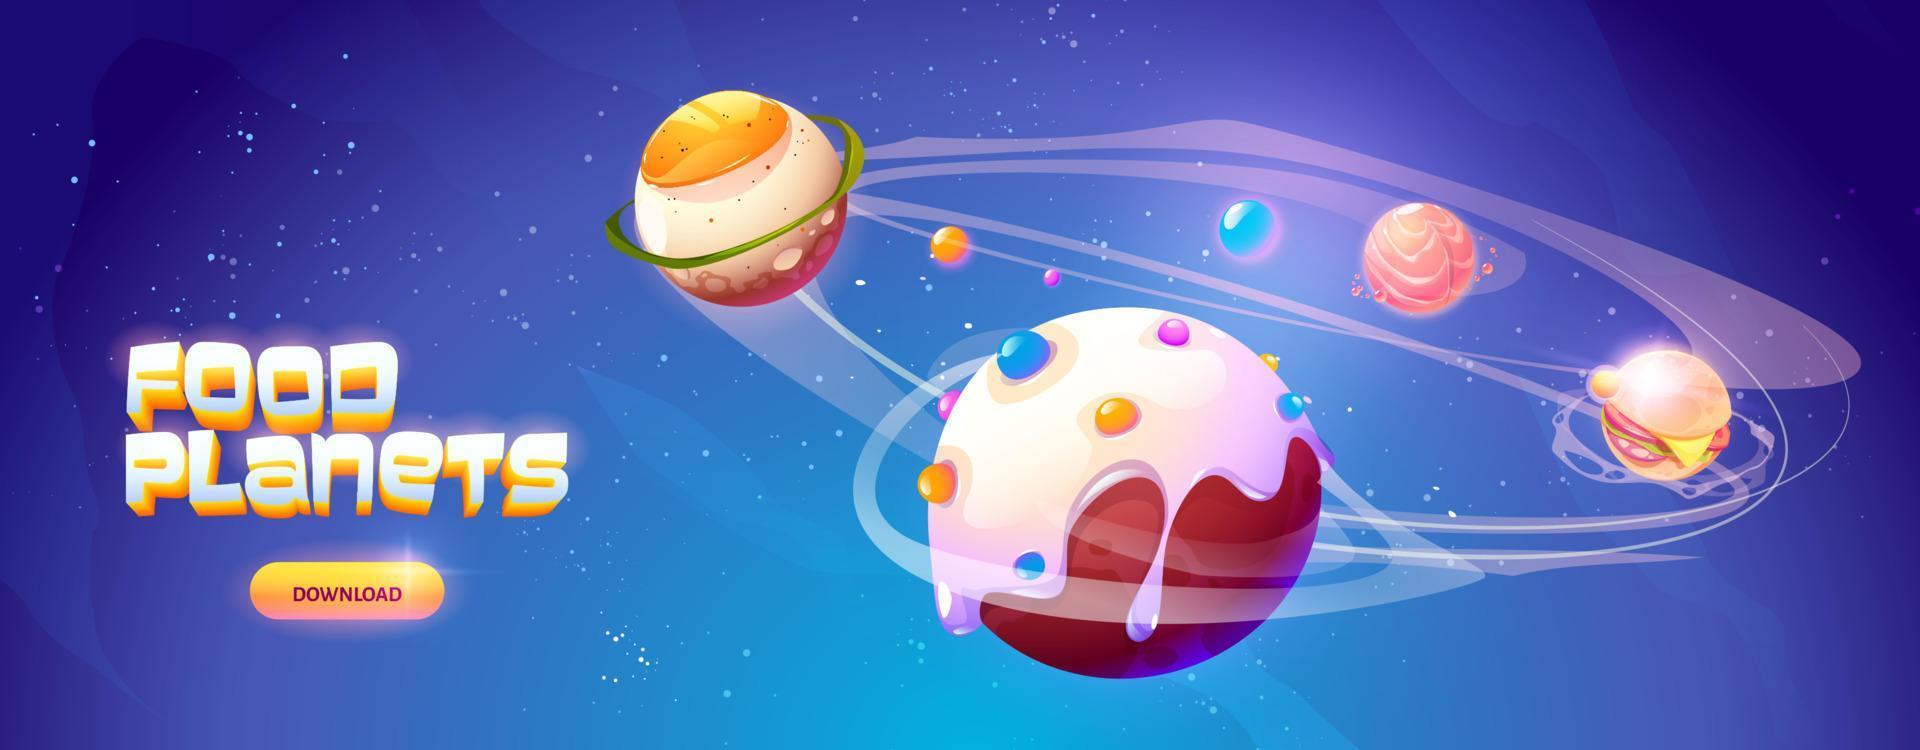 banner de planetas de comida del juego de arcade espacial vector